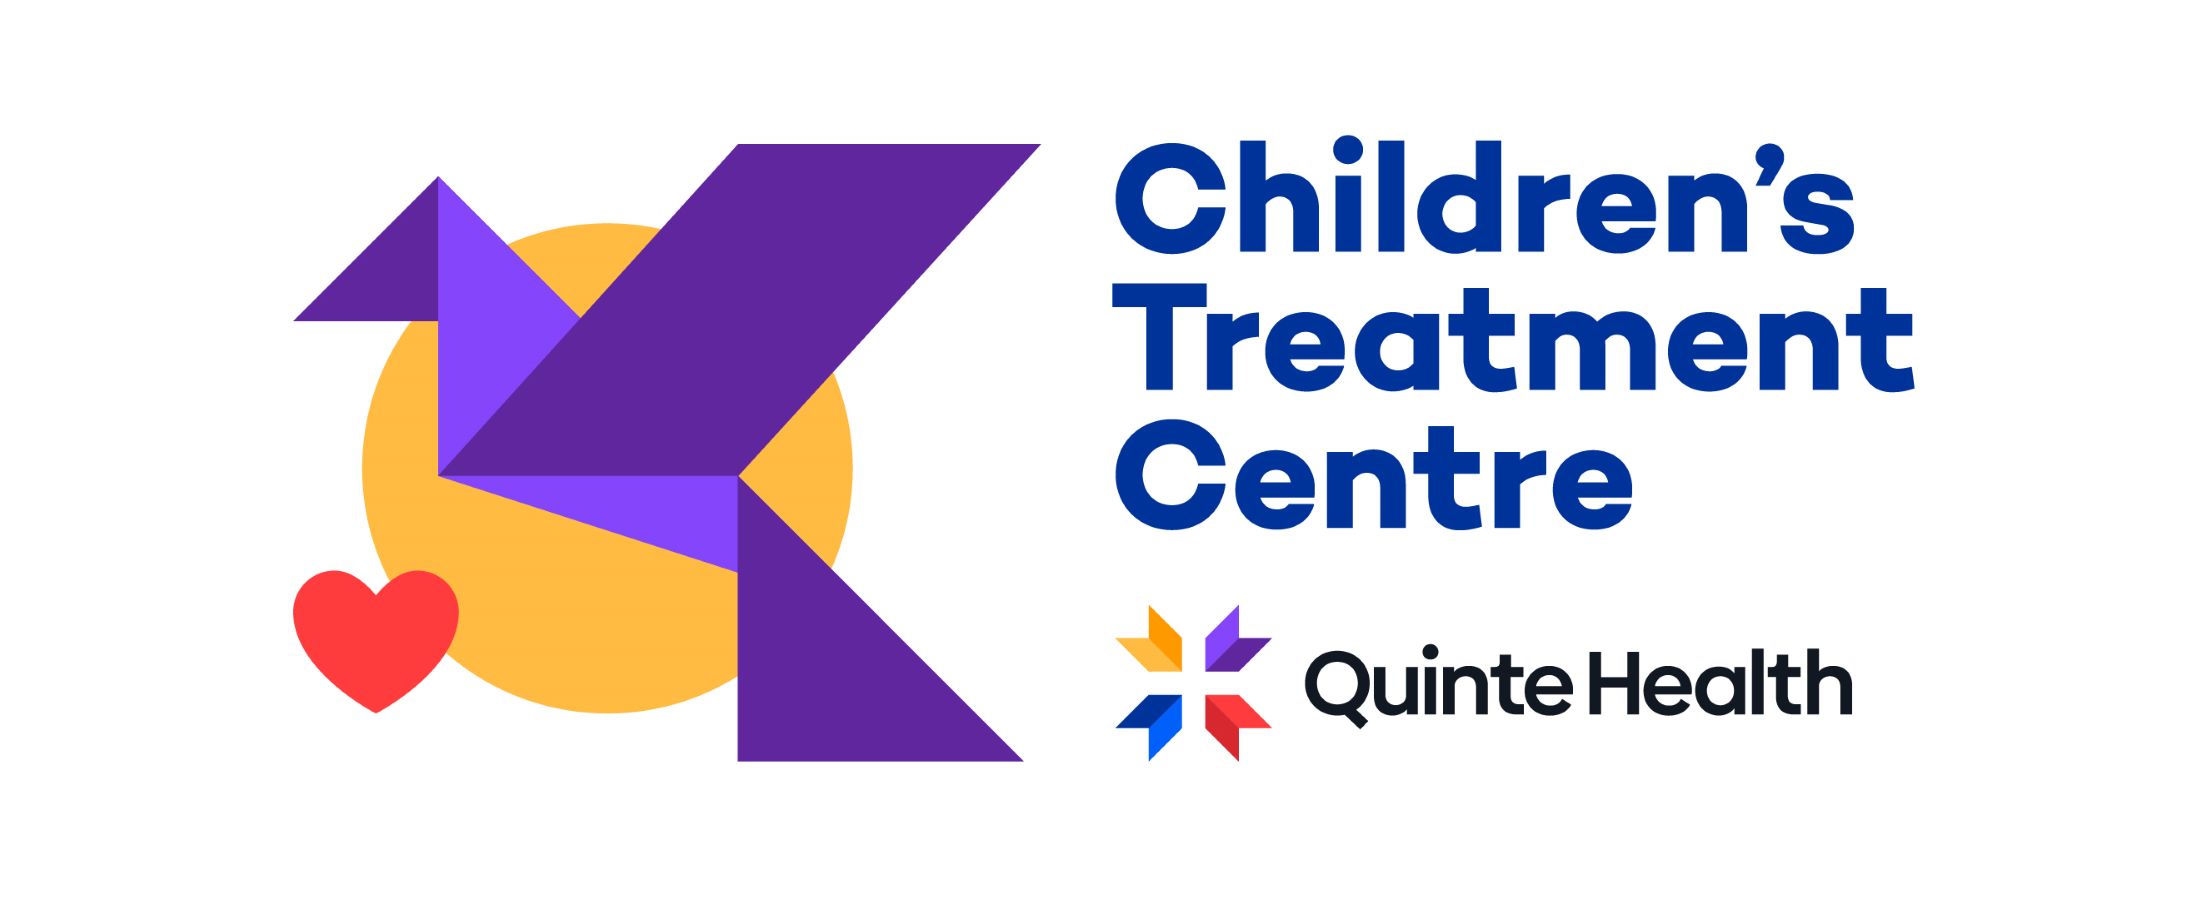 Quinte Children's Treatment Centre (part of Quinte Health)